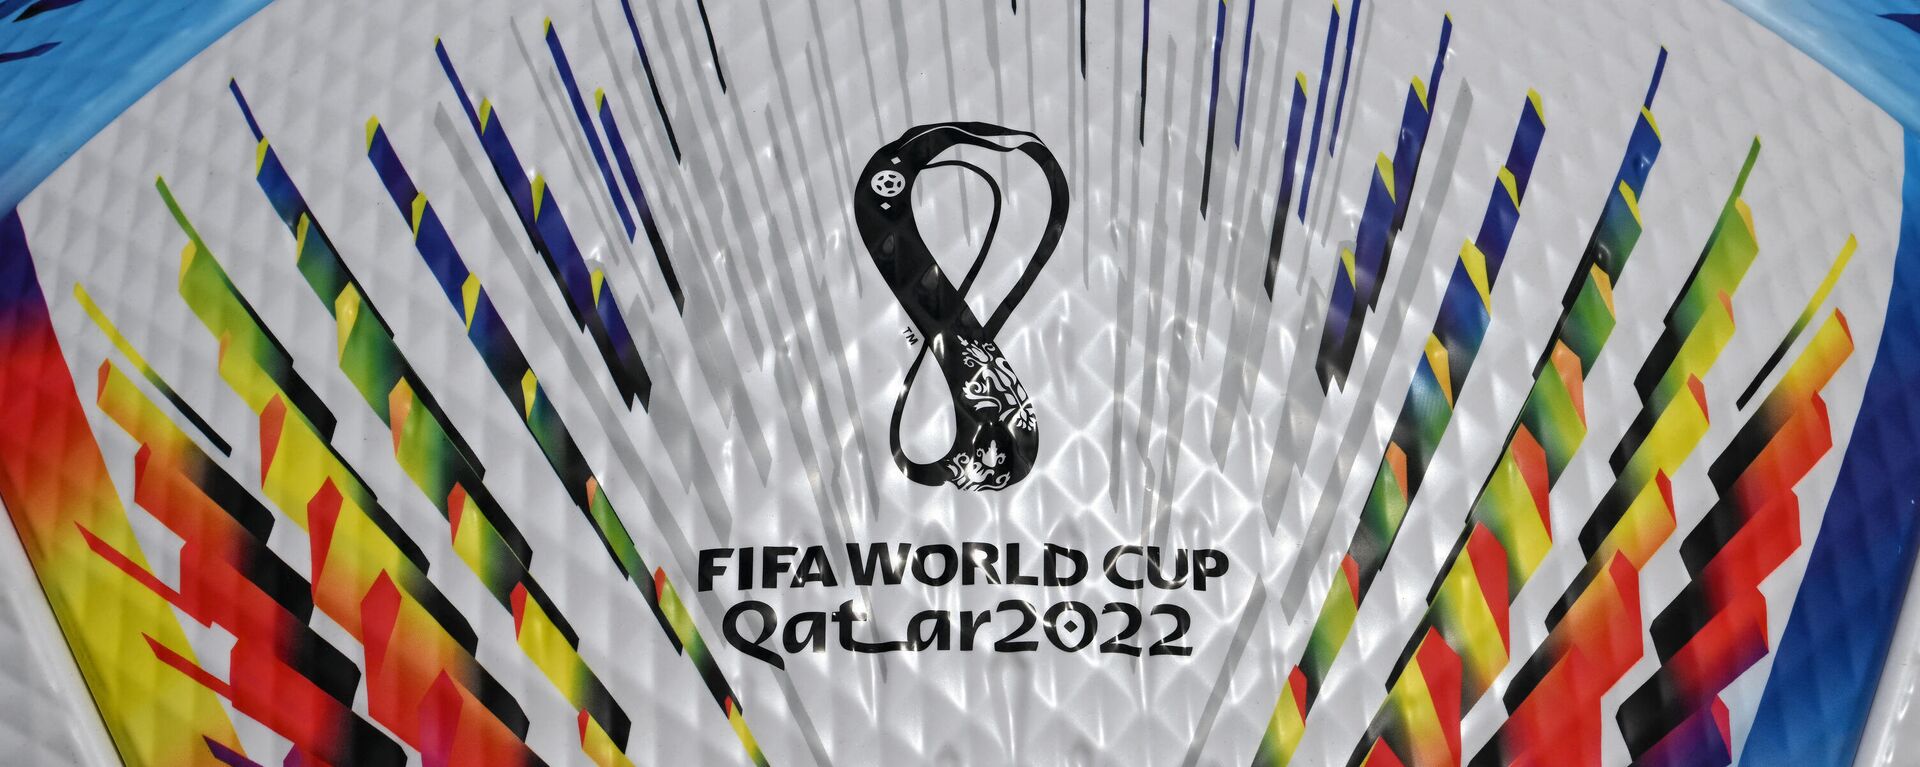 Логотип чемпионата мира по футболу 2022 года в Катаре - Sputnik Кыргызстан, 1920, 10.07.2022